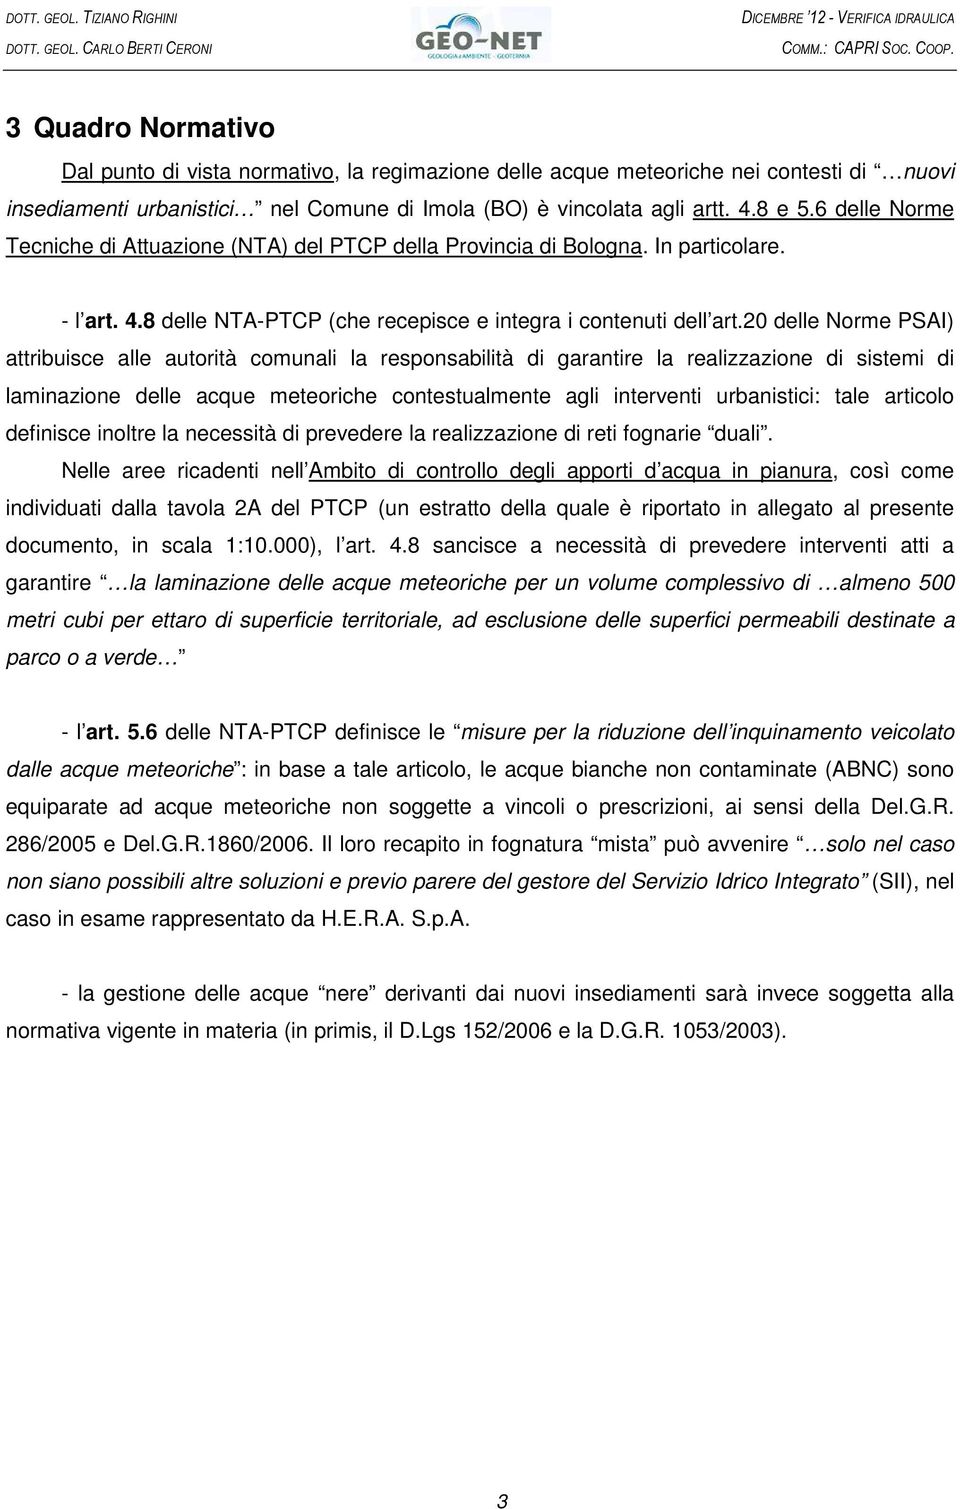 6 delle Norme Tecniche di Attuazione (NTA) del PTCP della Provincia di Bologna. In particolare. - l art. 4.8 delle NTA-PTCP (che recepisce e integra i contenuti dell art.